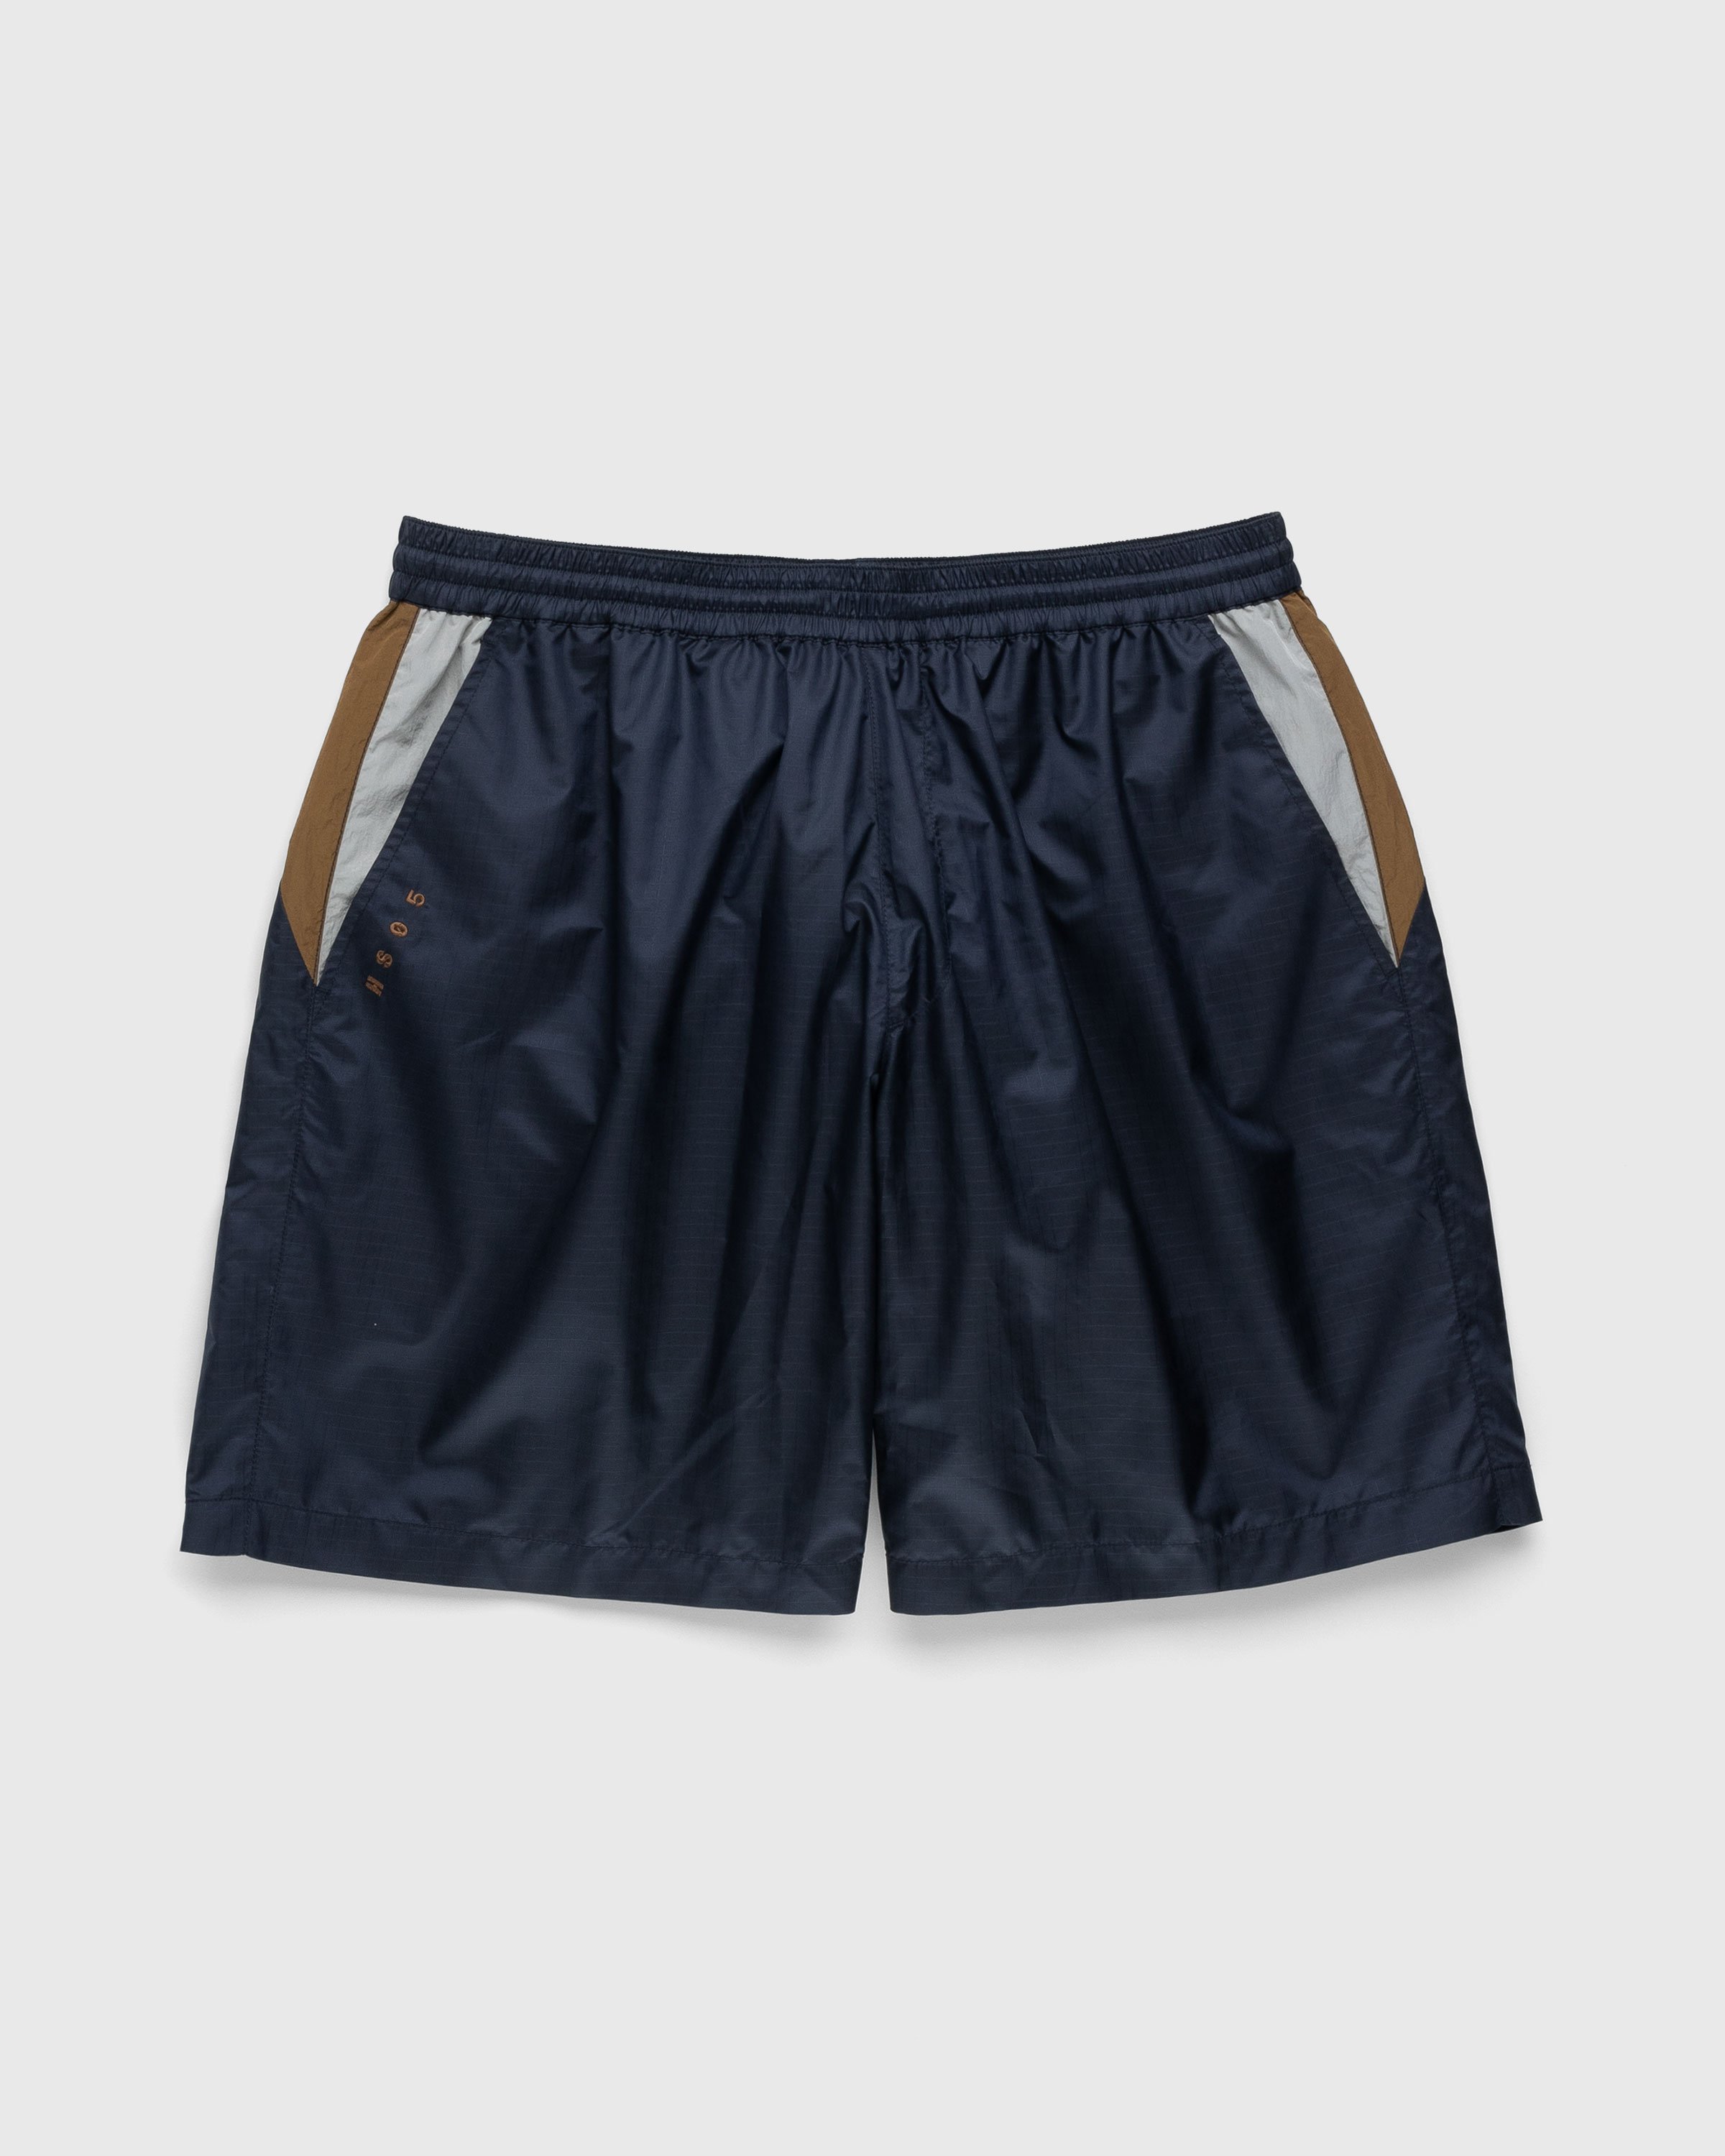 Highsnobiety – Mix Panel Nylon Shorts Navy/Brown | Highsnobiety Shop